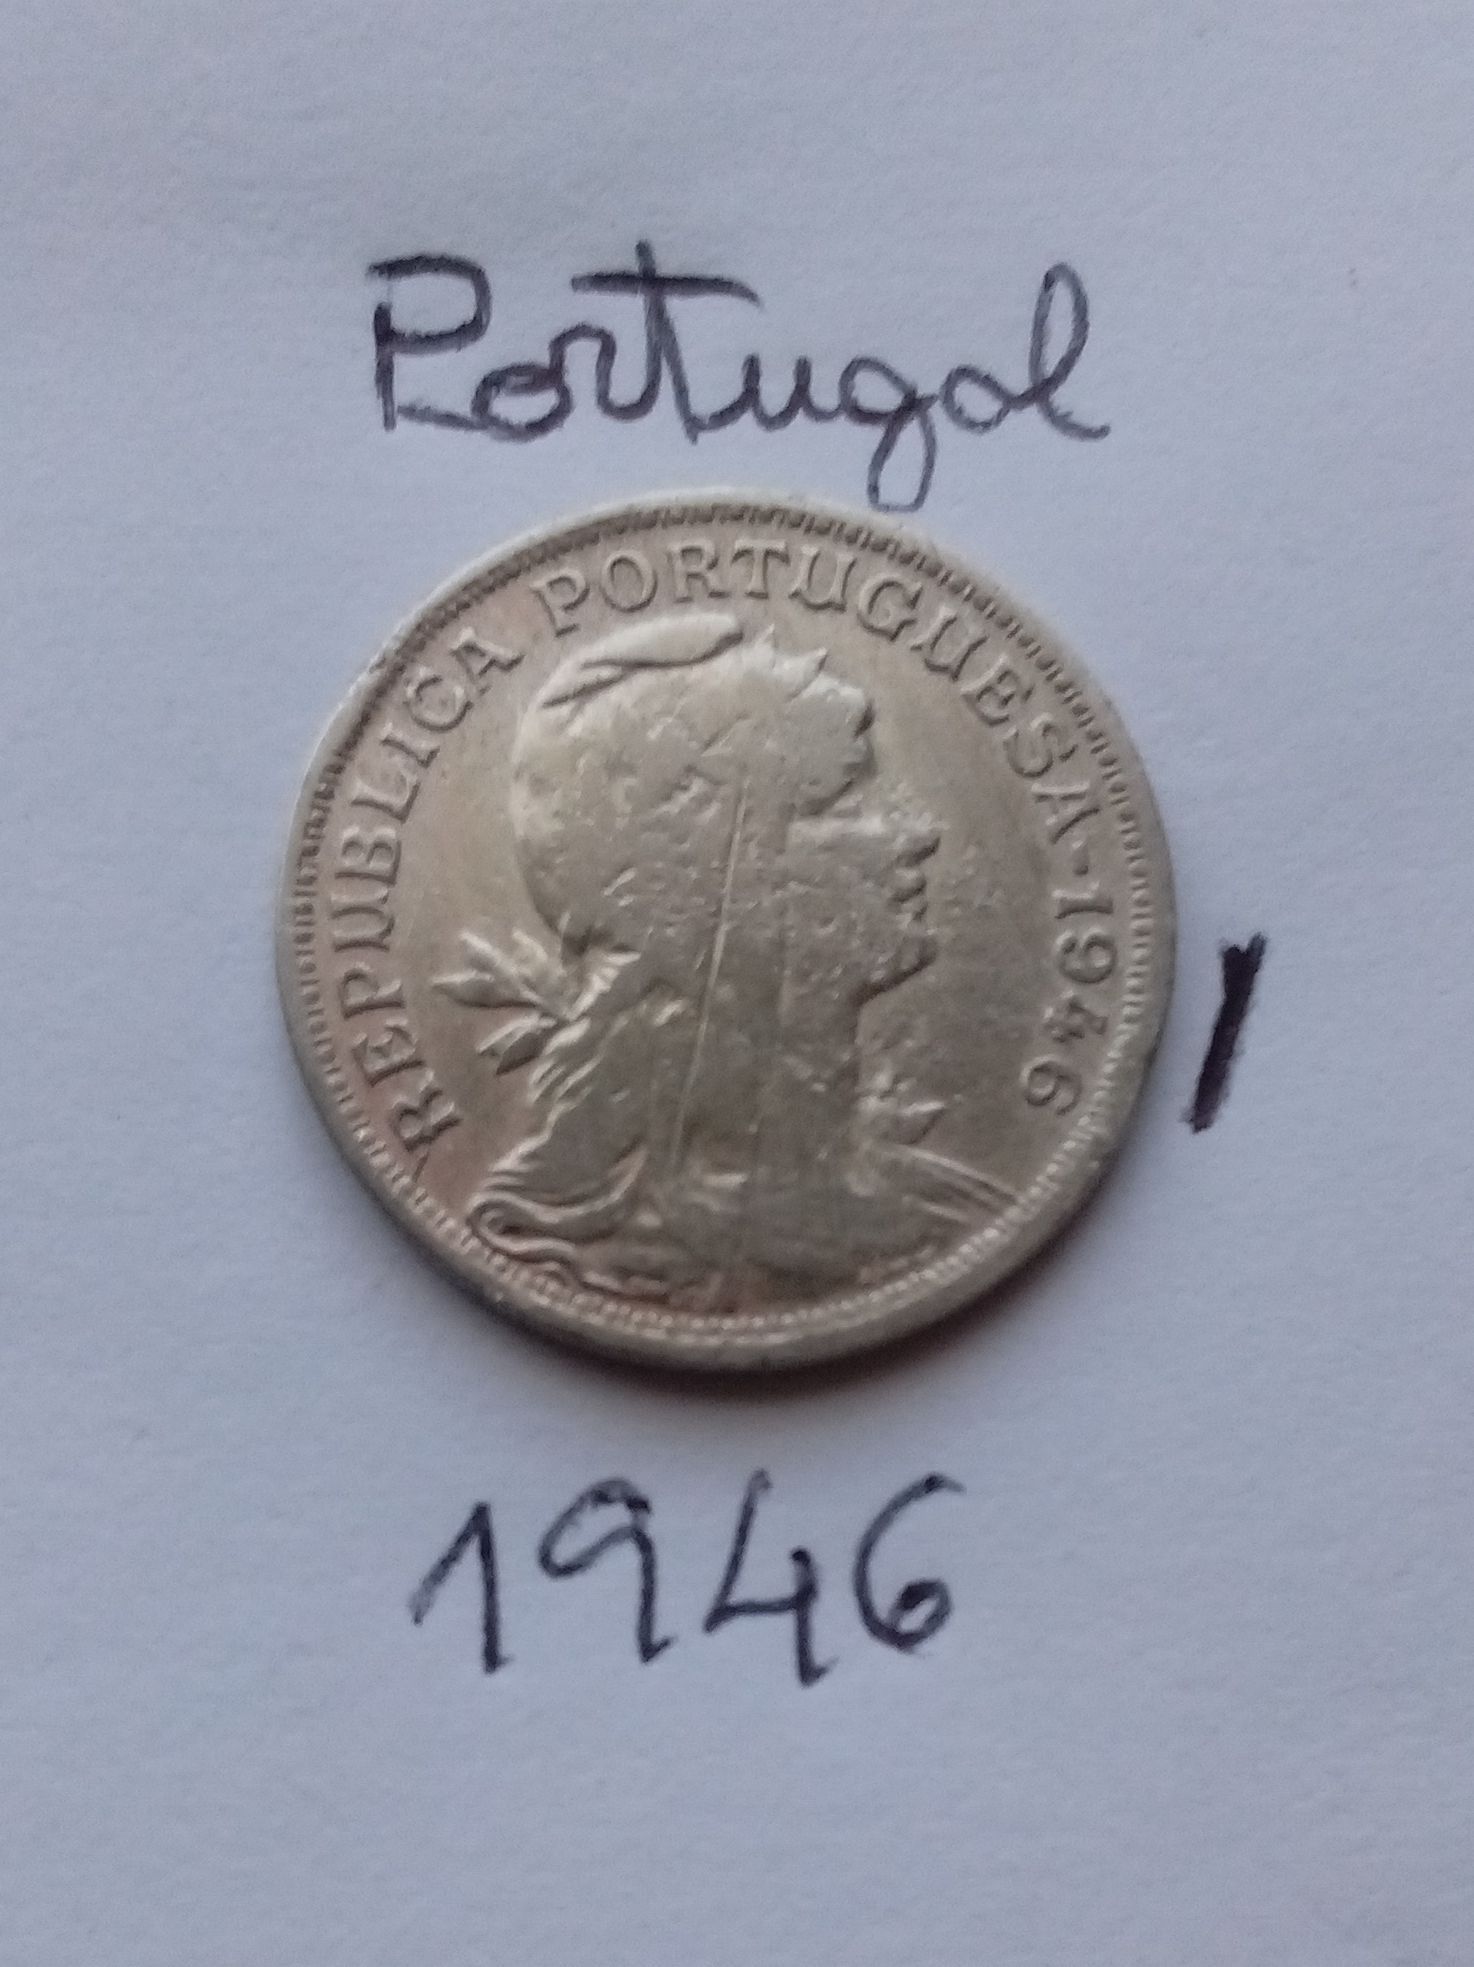 Moeda 1946 Portugal 50 Centavos